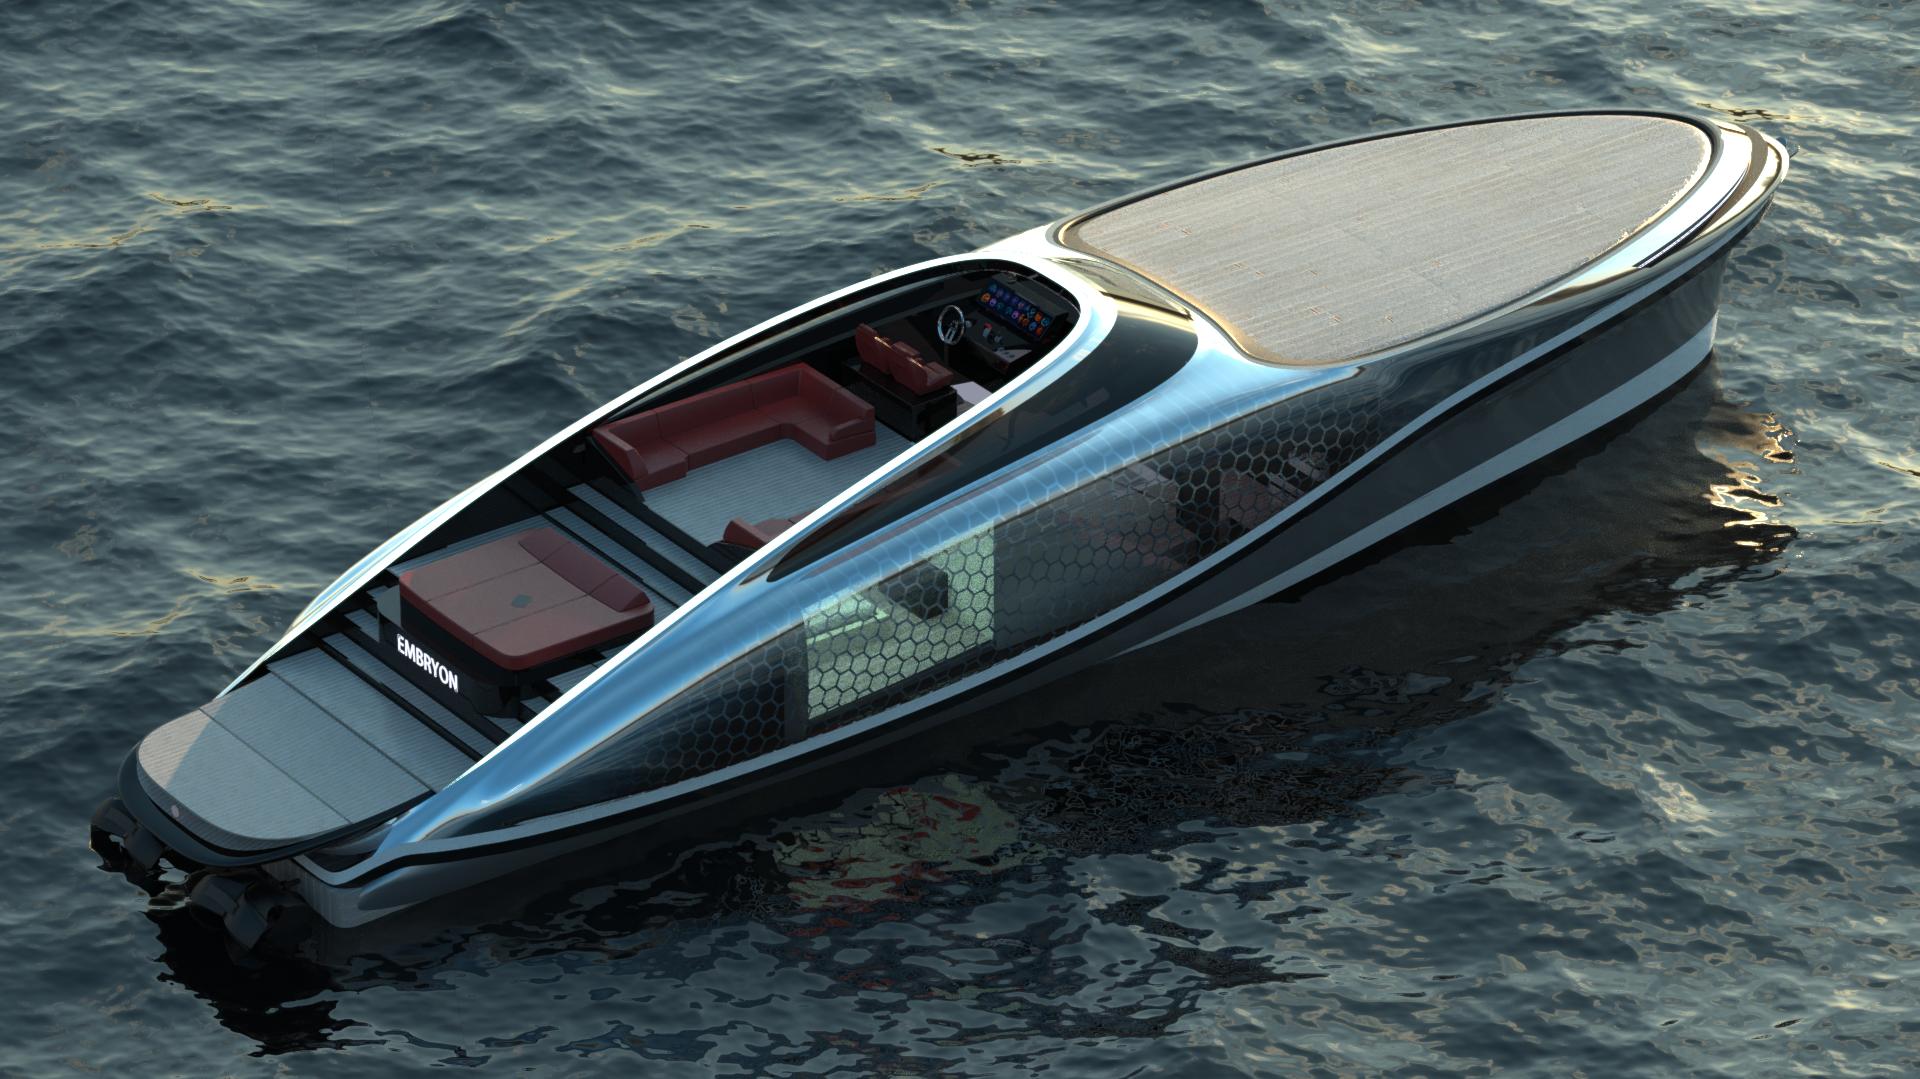 imagen 2 de Embryon Hyperboat Concept, una nueva joya náutica de Lazzarini.